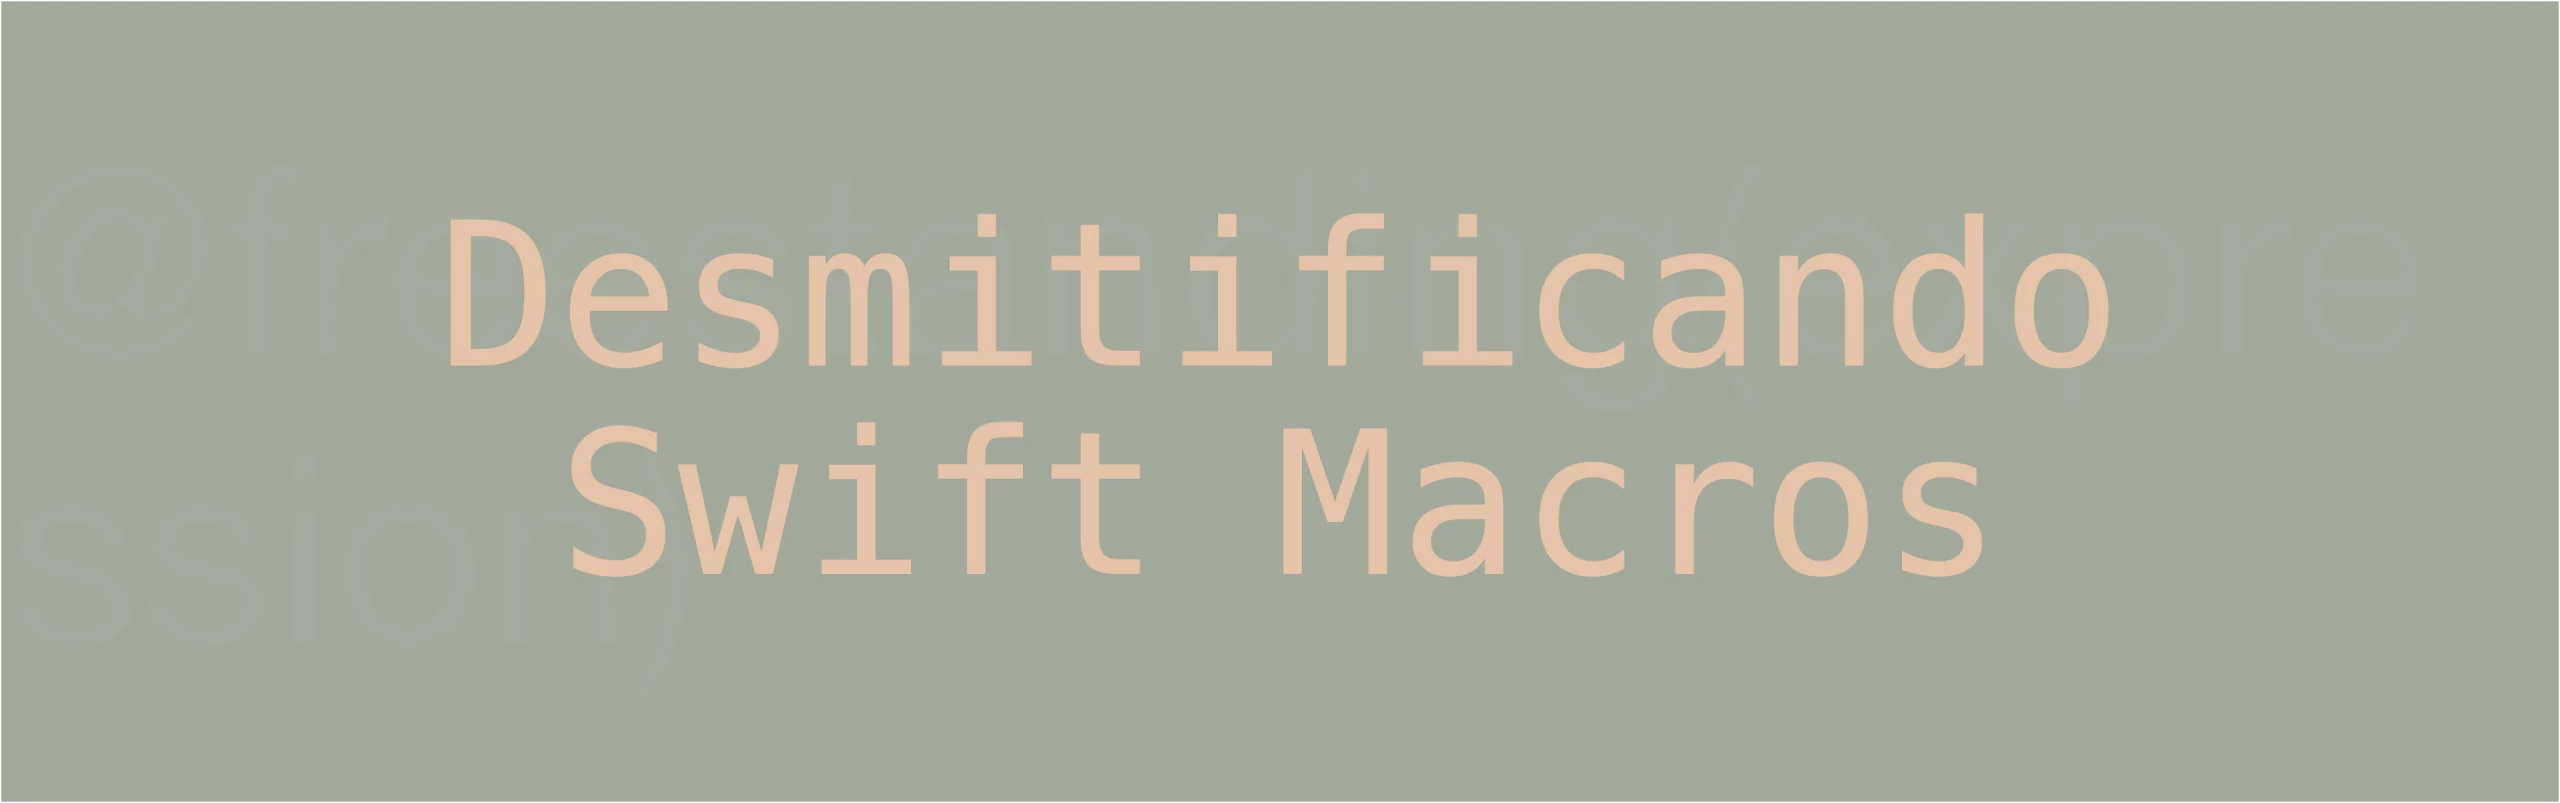 swift-macros-title